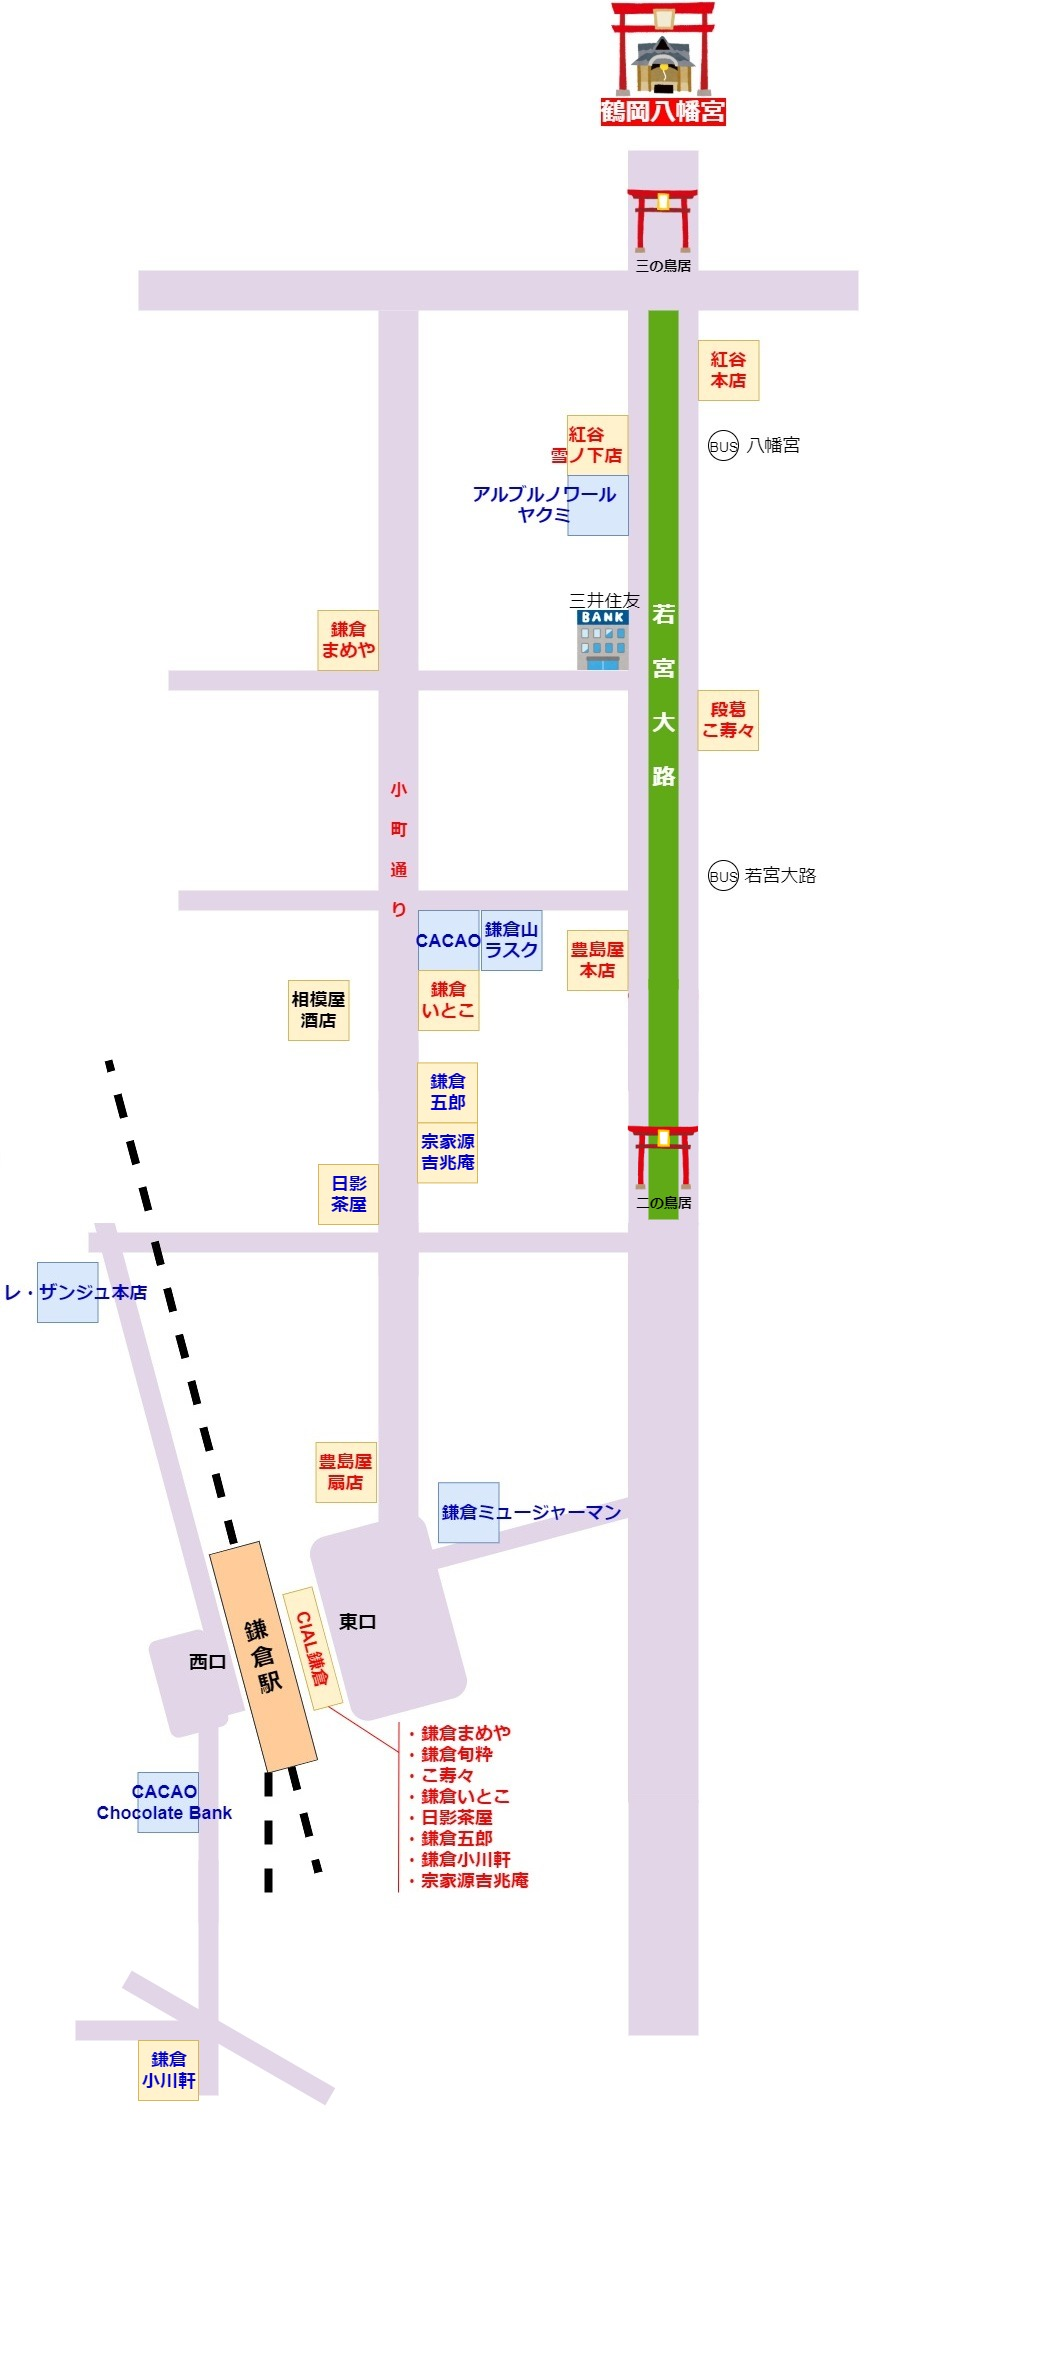 鎌倉のお土産 おすすめのトップ18店舗 マップ付き Yorimichi Blog